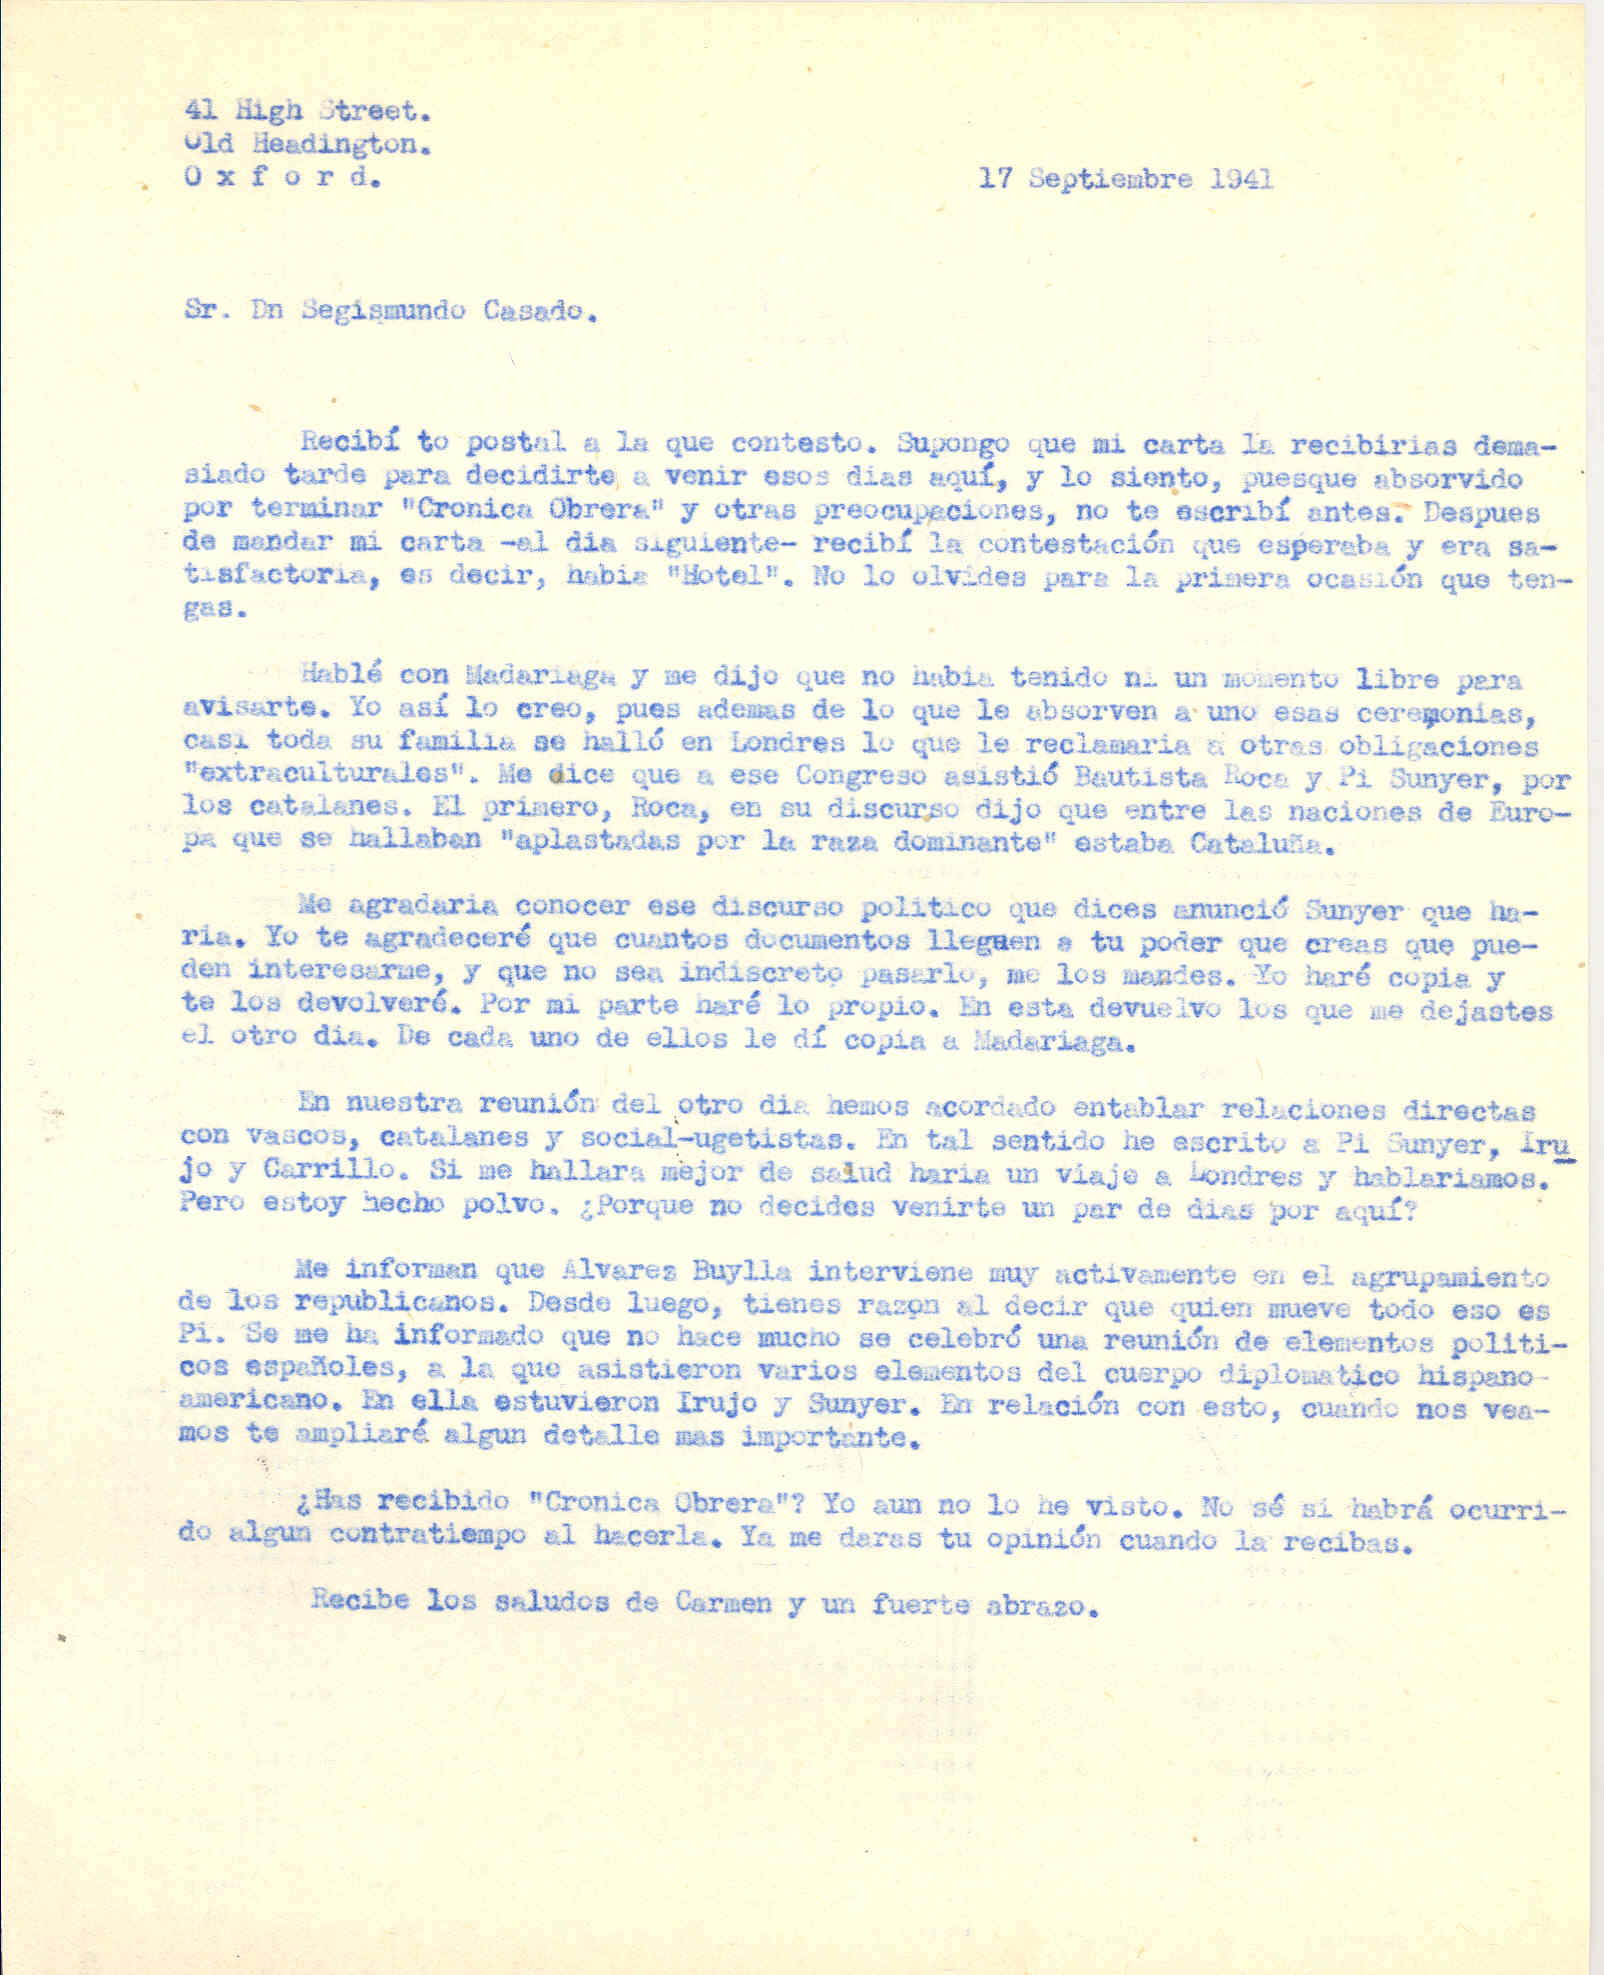 Carta a Segismundo Casado en la que habla del congresó al que asistió Bautista Roca y Pi i Sunyer y del agrupamiento de los republicanos.